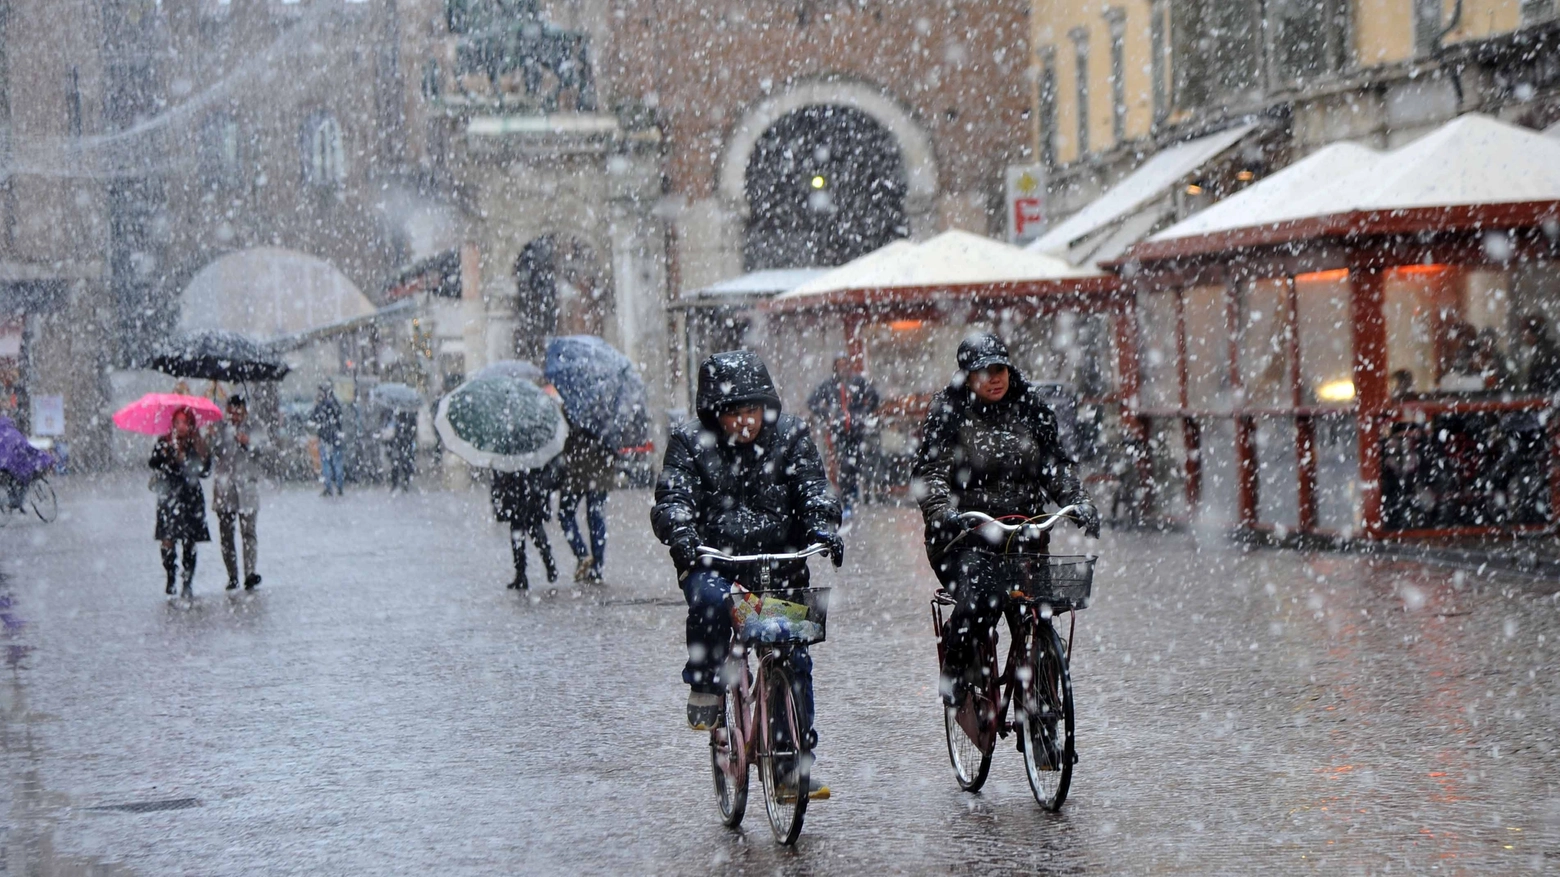 Irriducibili in bici anche sotto la neve (Businesspress)